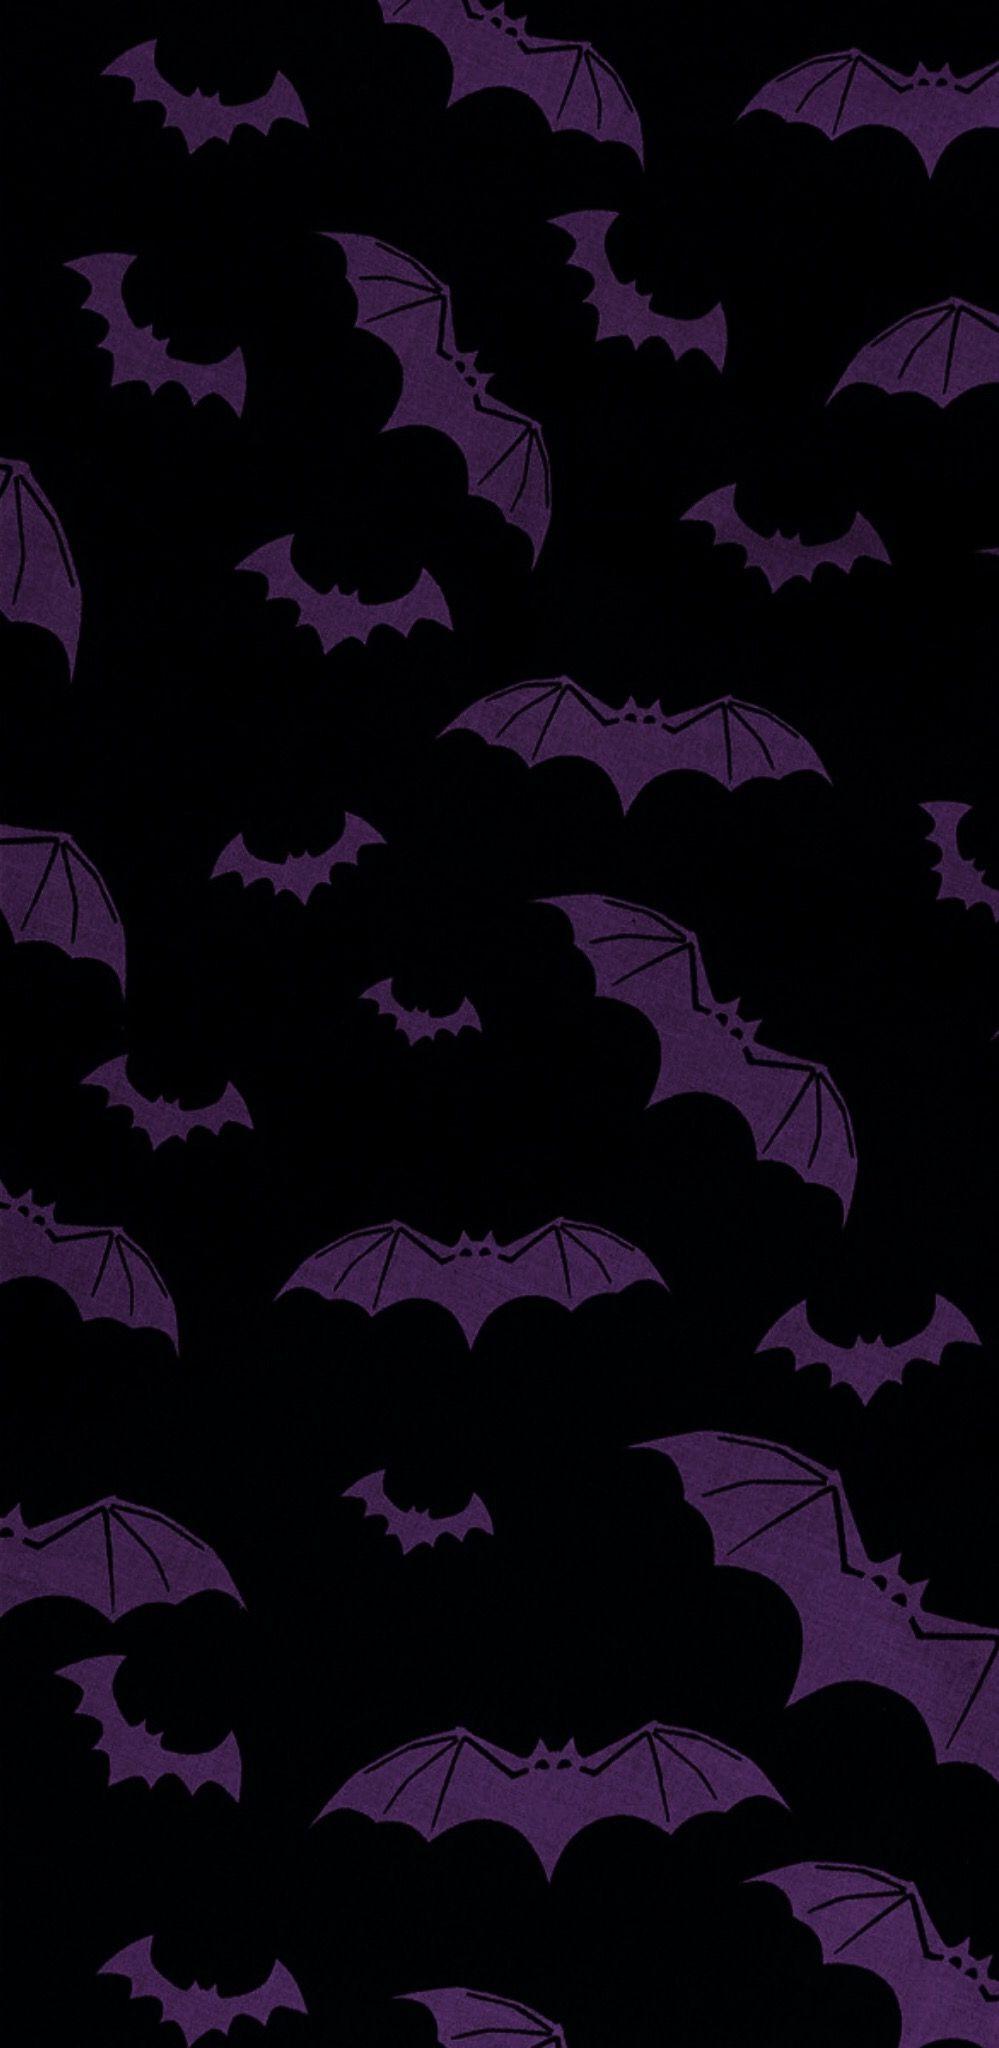 Batty Wallpaper. Wallpaper. Halloween wallpaper, Gothic